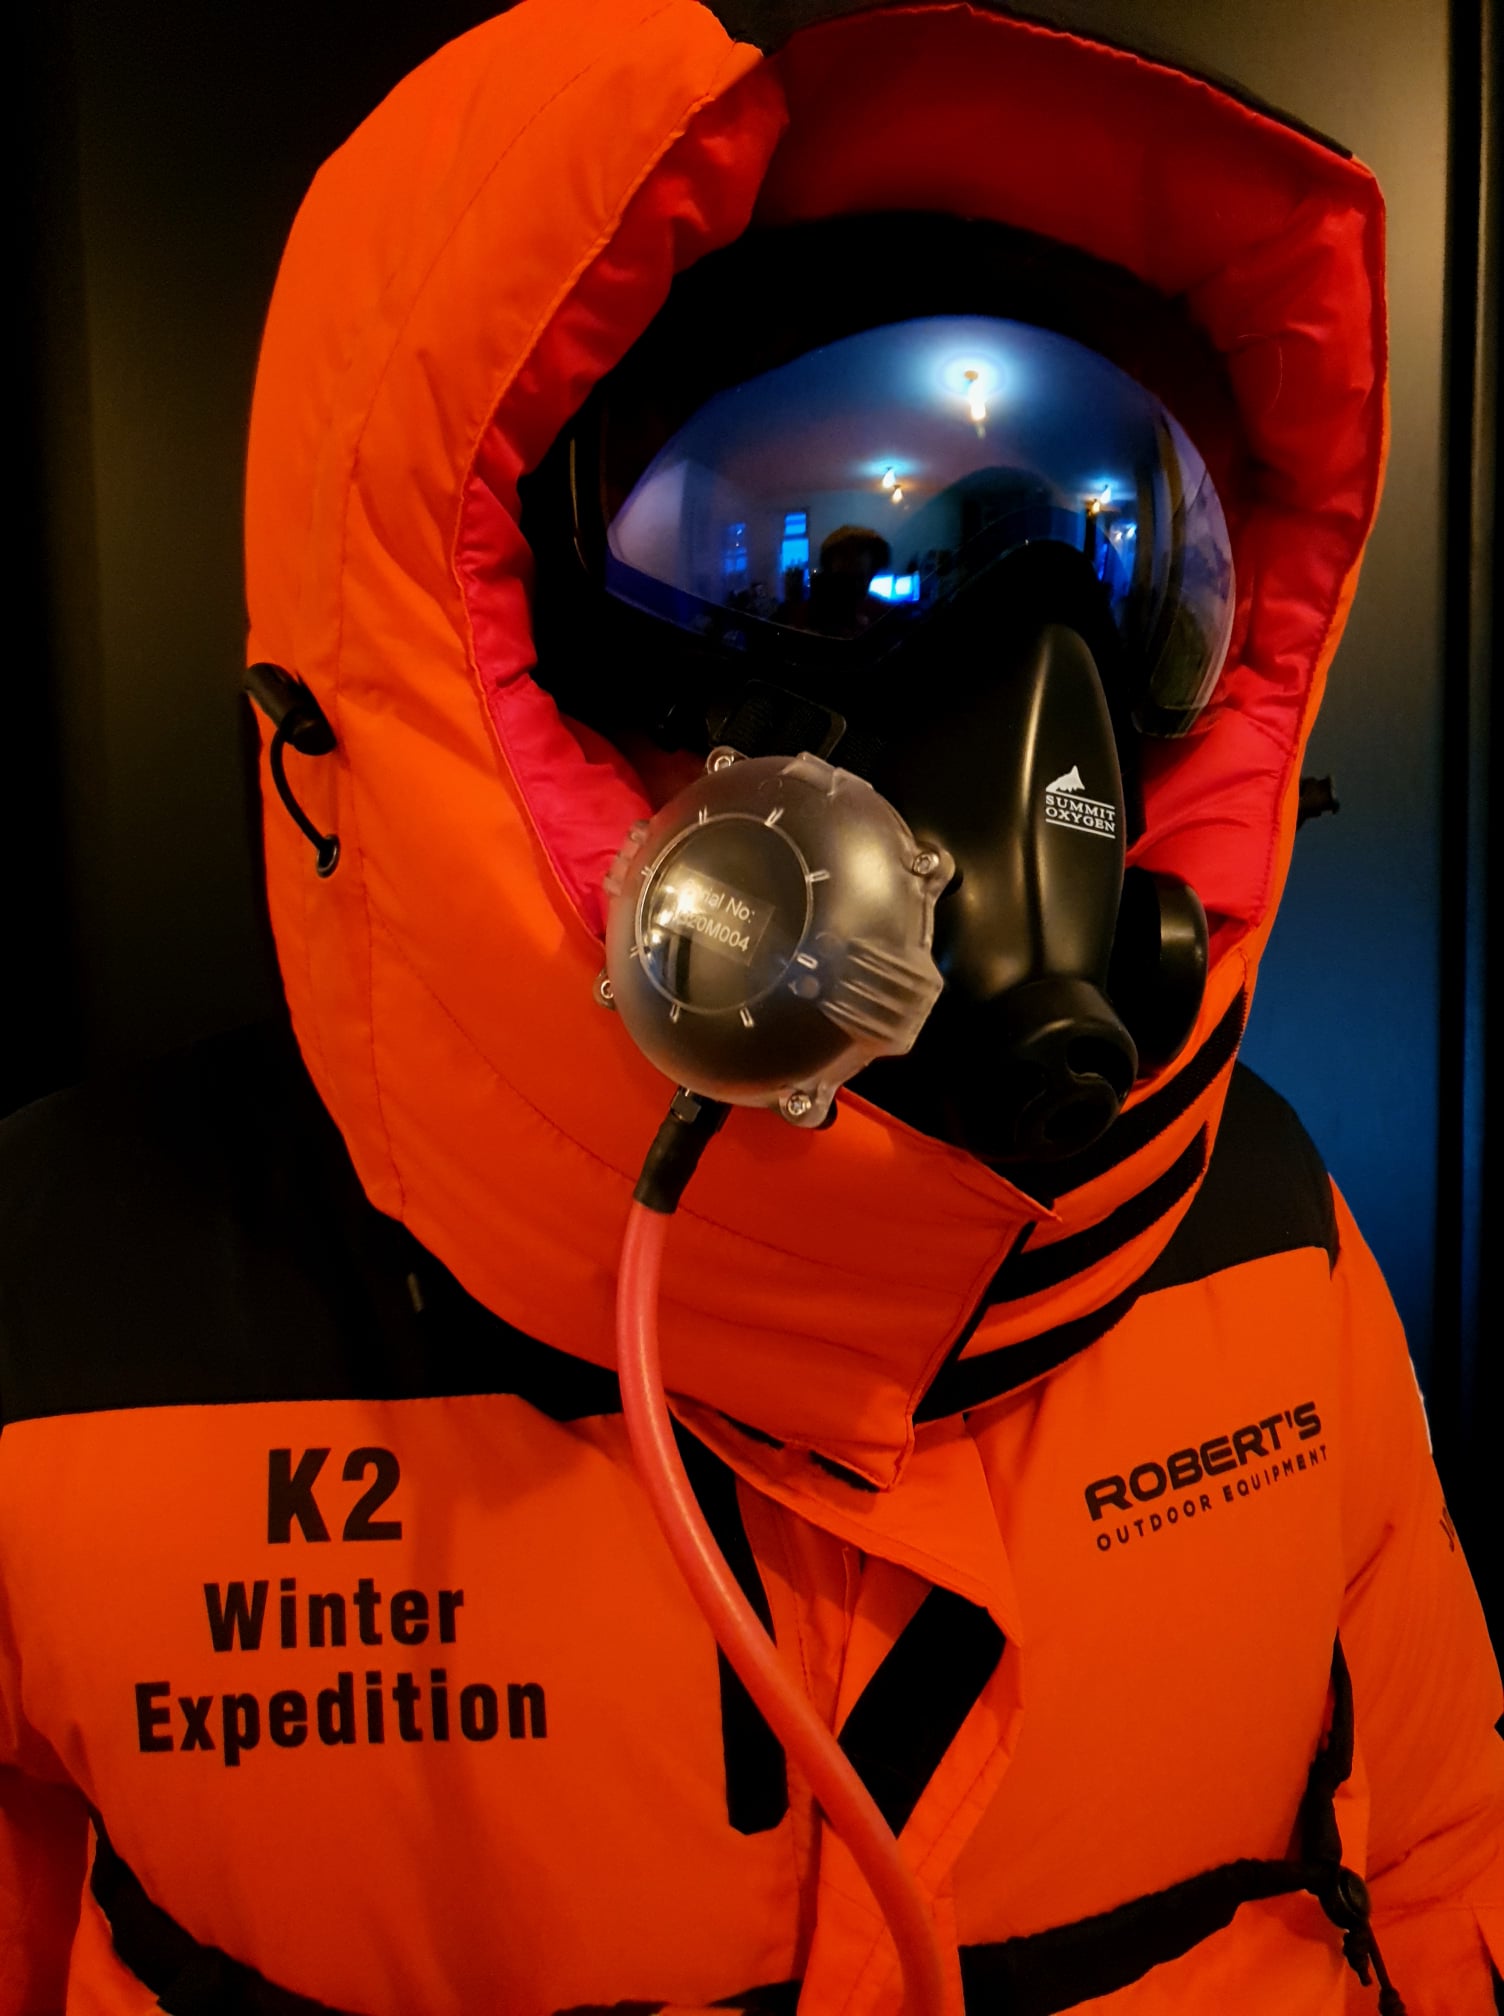 Костюм Джона Снорри, который будет использоваться в зимней экспедиции на К2 в сезоне 2020/2021